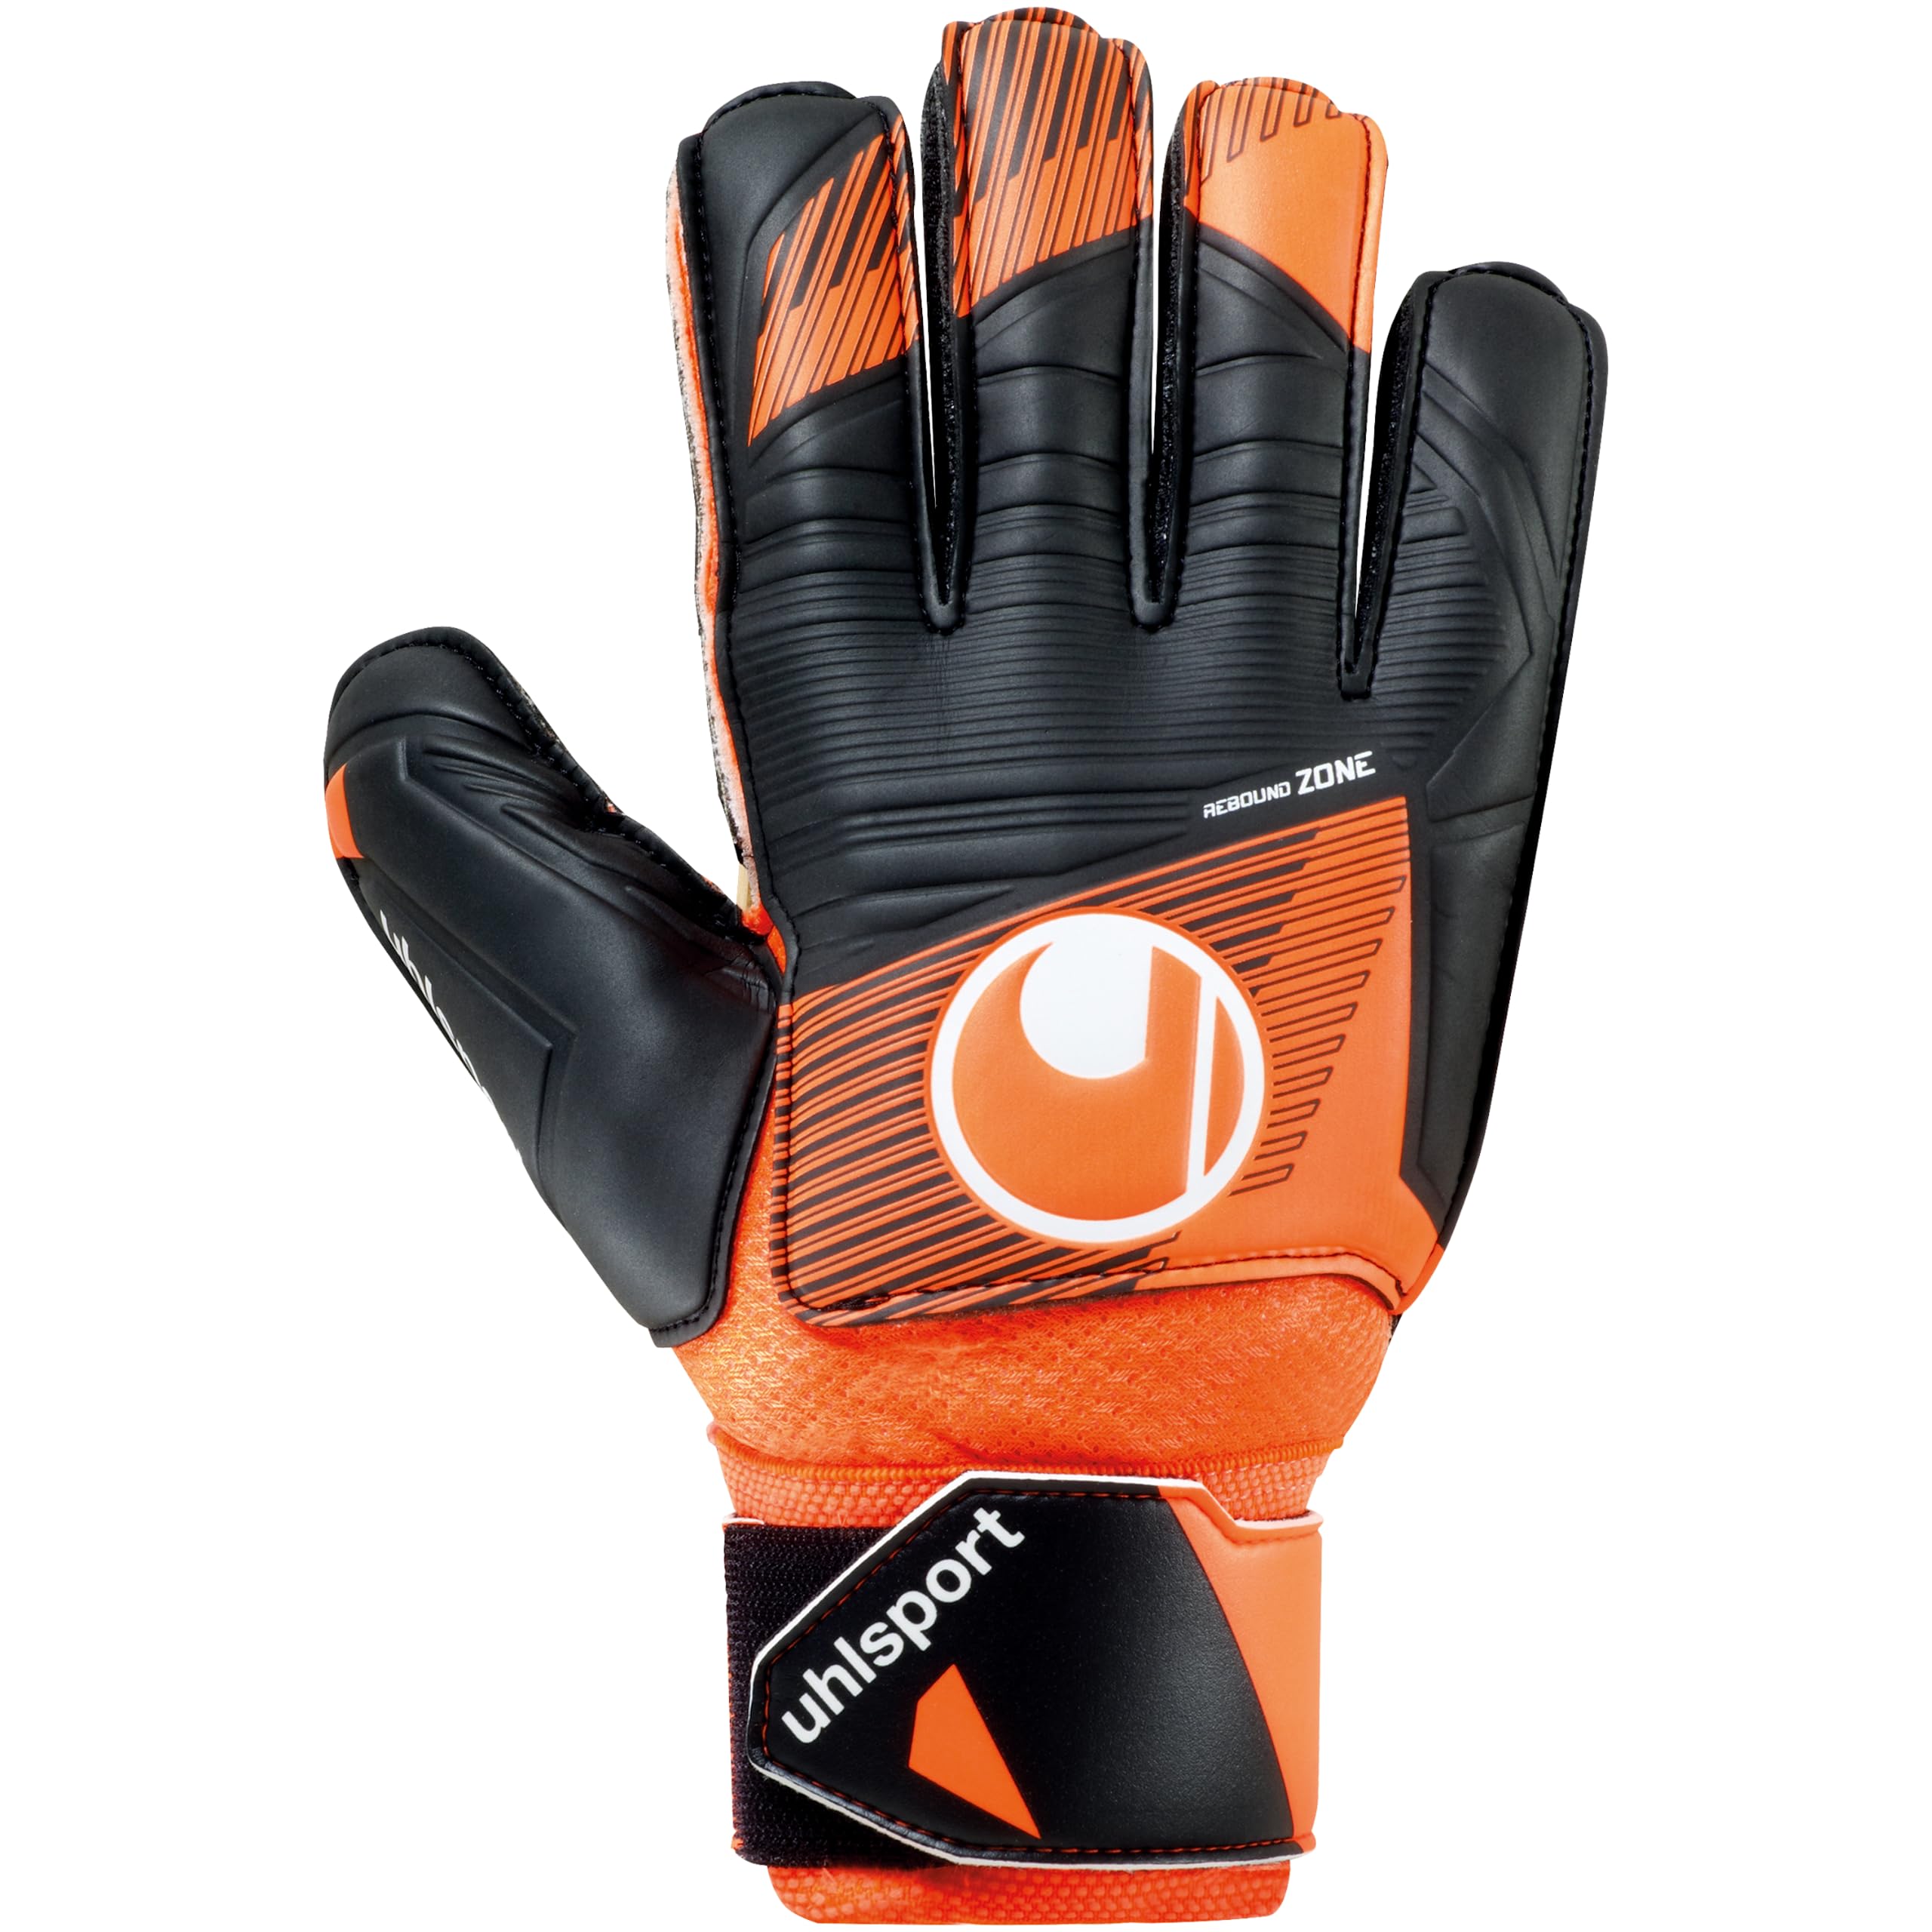 uhlsport Soft Resist+ Flex Frame Fußball Torwarthandschuhe - Handschuhe für Torhüter - speziell für Kunstrasen und Hartböden - mit Fingerschutz